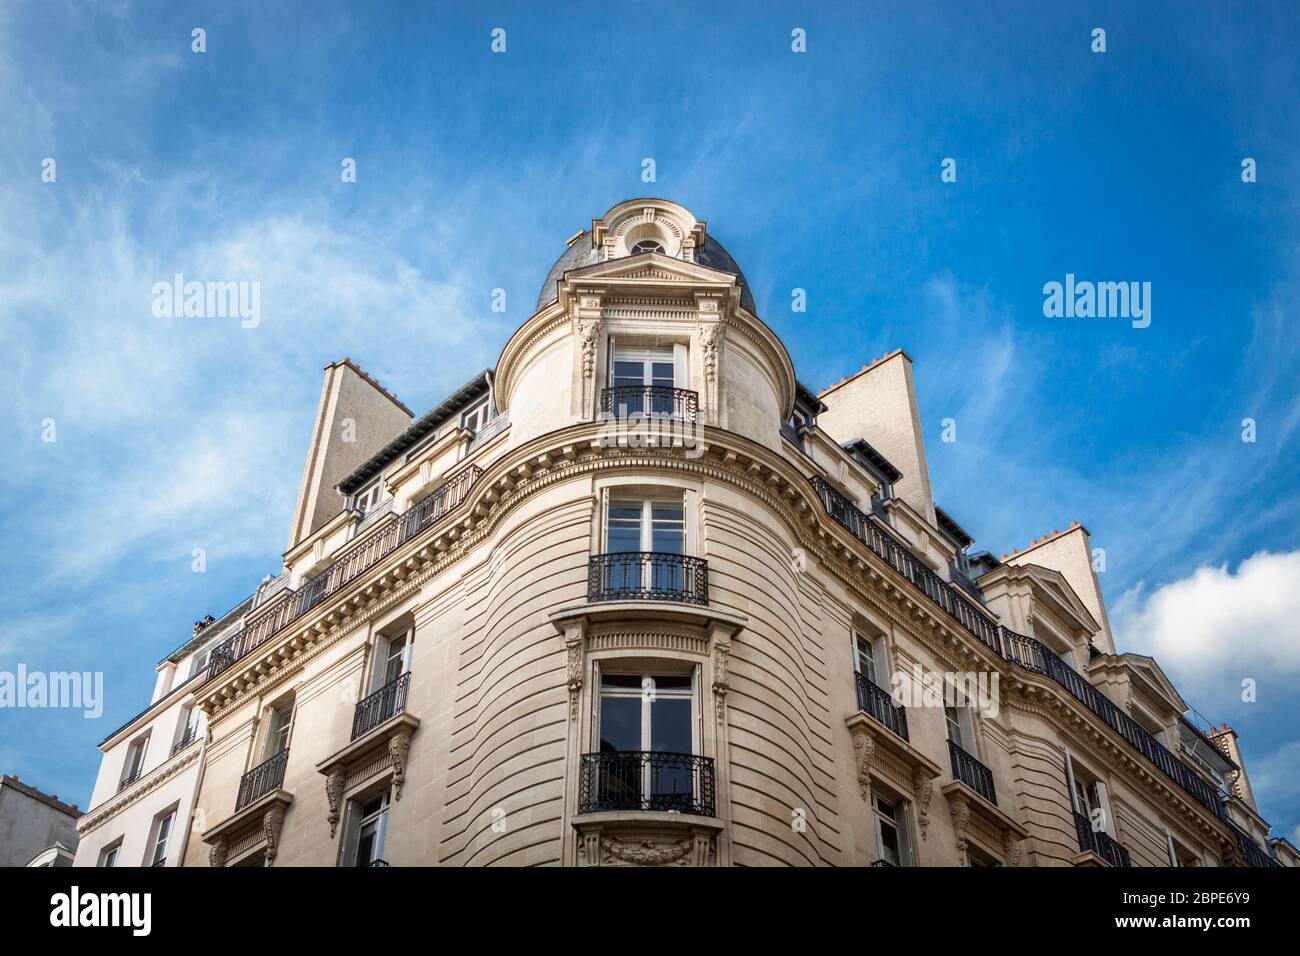 Außenansicht eines Pariser Stadthauses im Sommer vor blauem Himmel Foto Stock